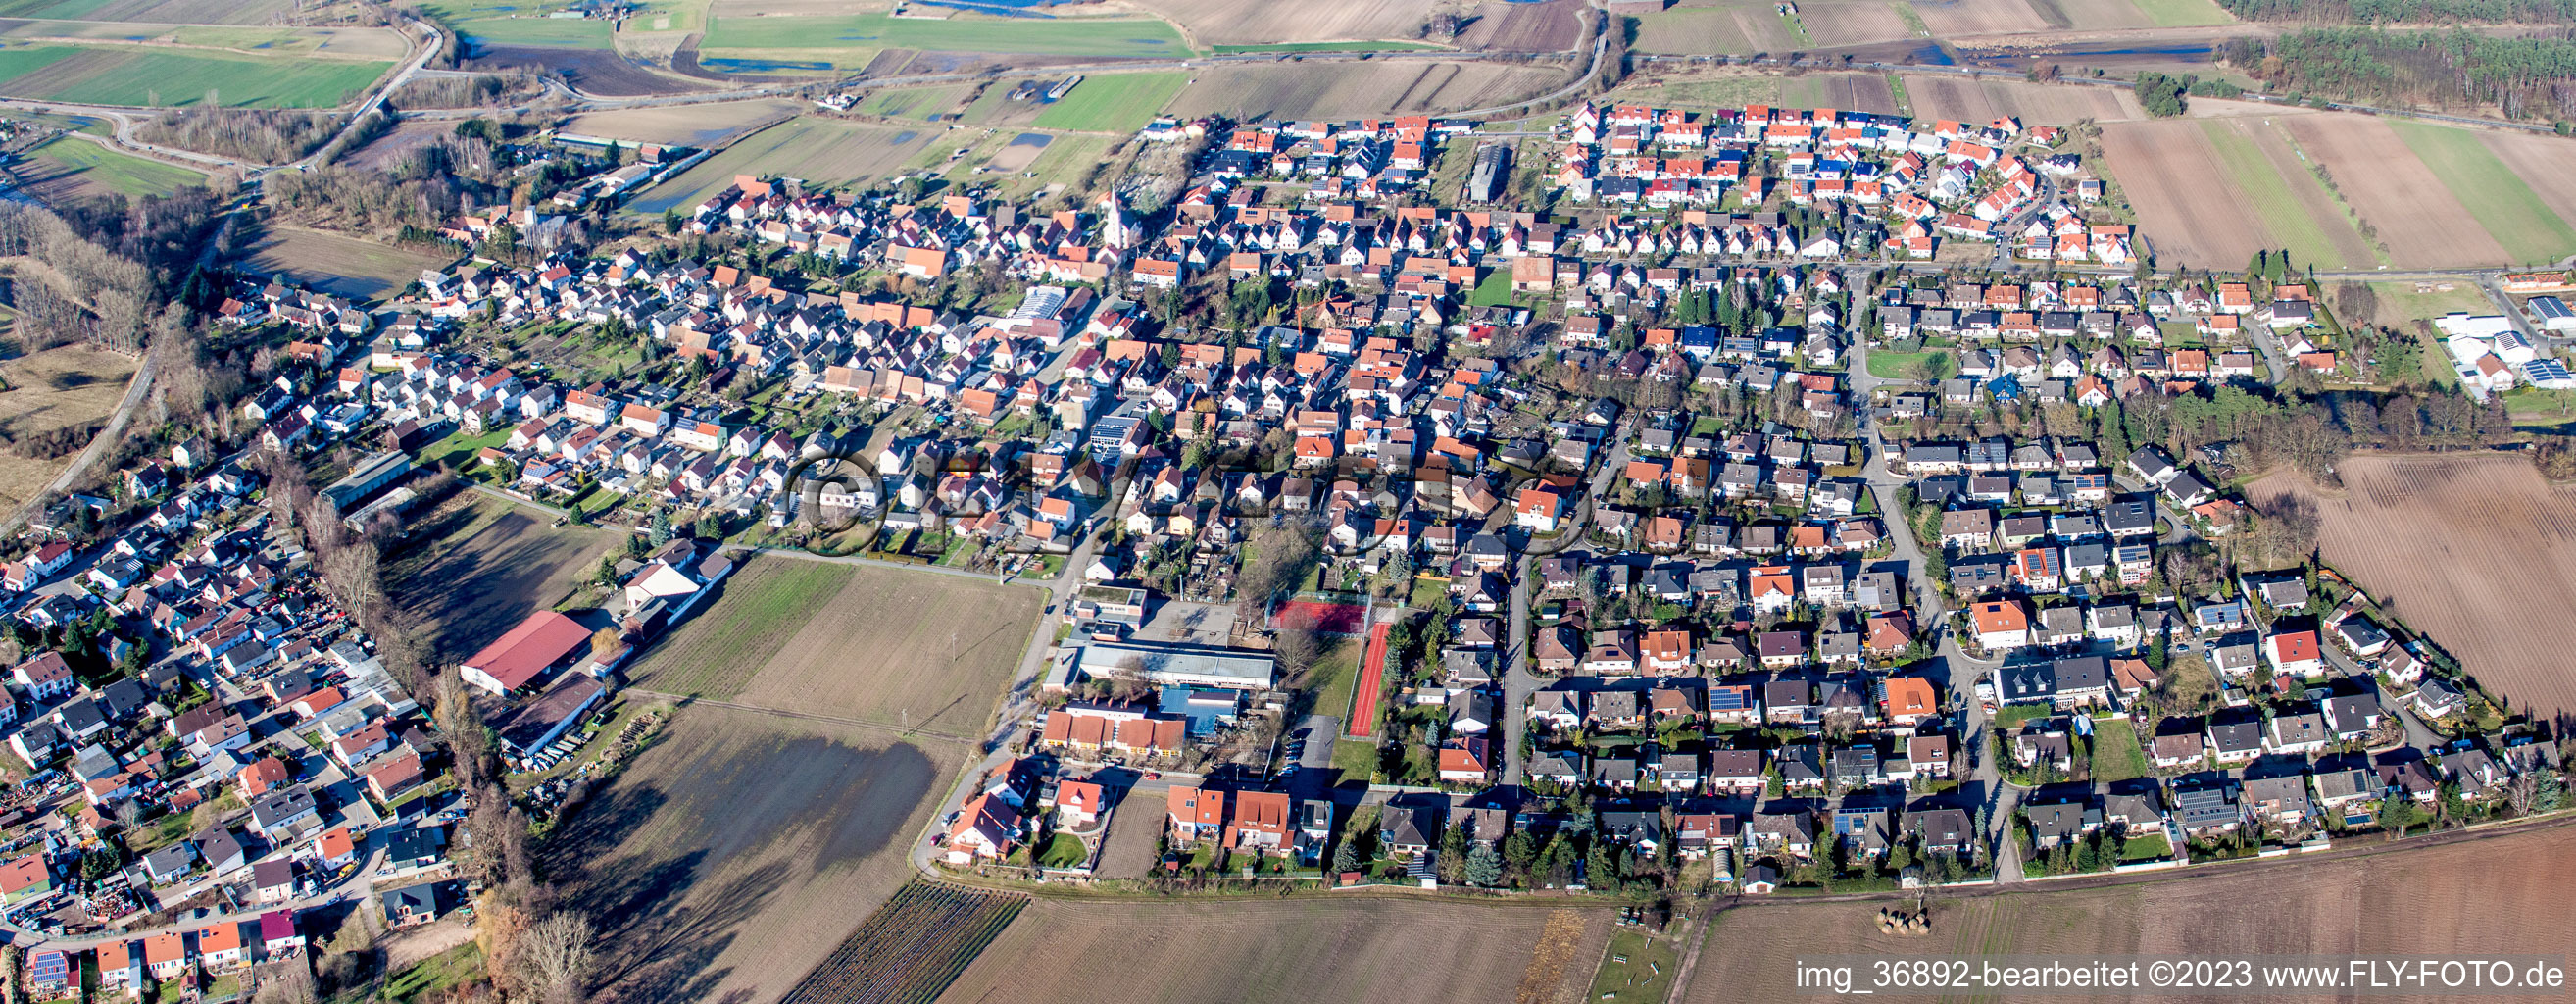 Hanhofen im Bundesland Rheinland-Pfalz, Deutschland von der Drohne aus gesehen